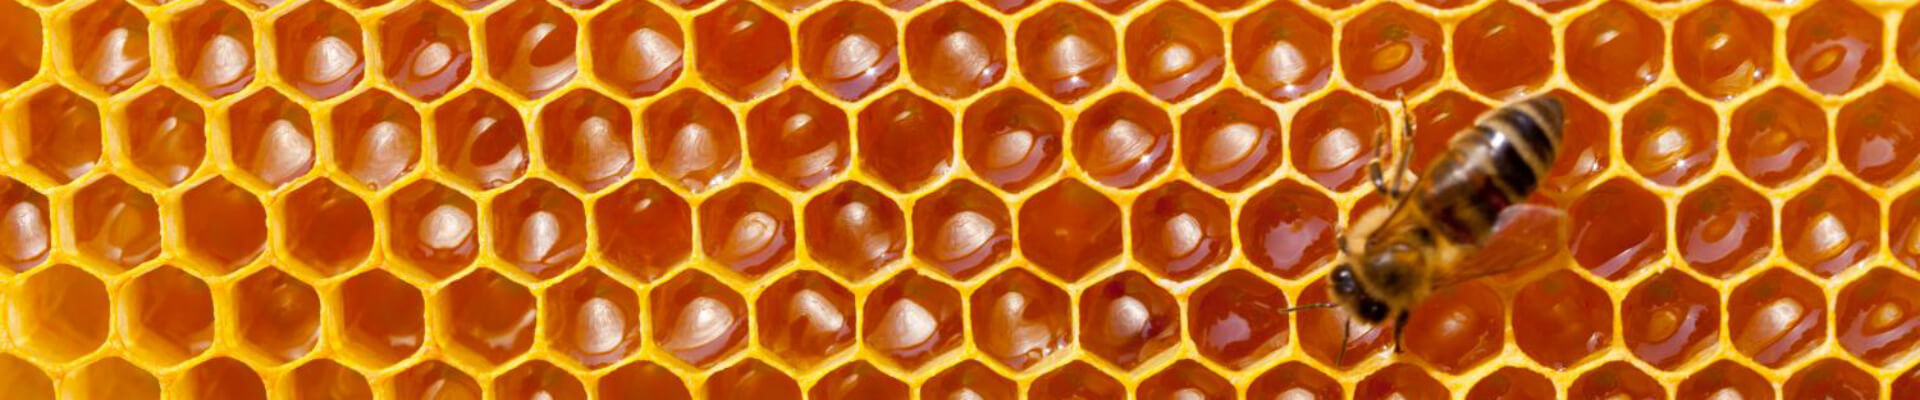 miel-magasin-bio-janze-le-carre-biologique